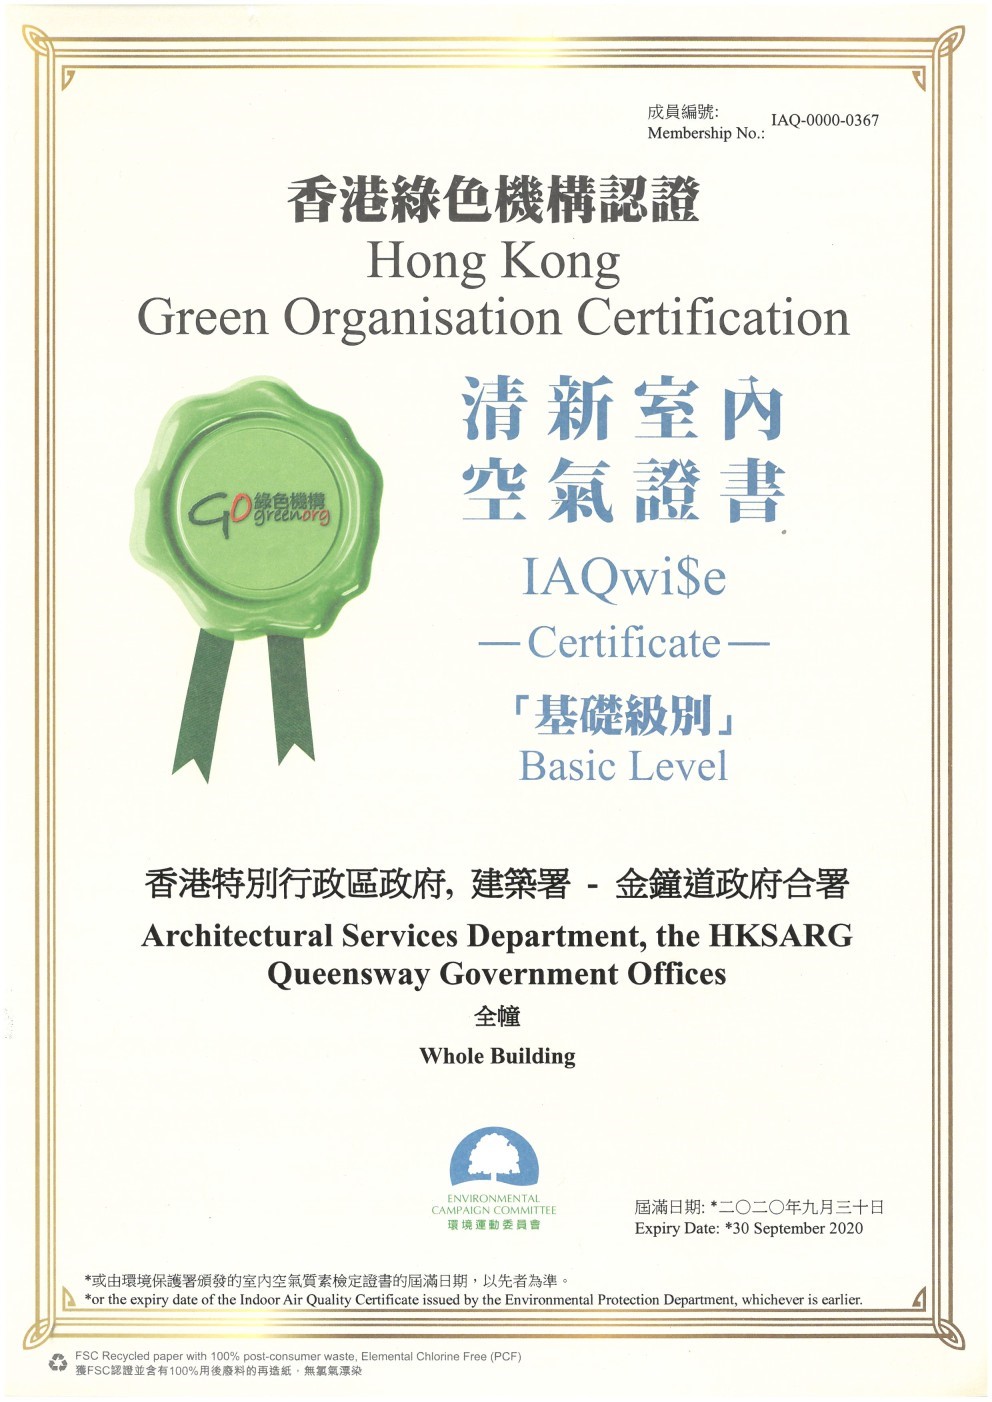 建業中心和金鐘道政府合署均獲得「基礎級別」清新室內空氣證書